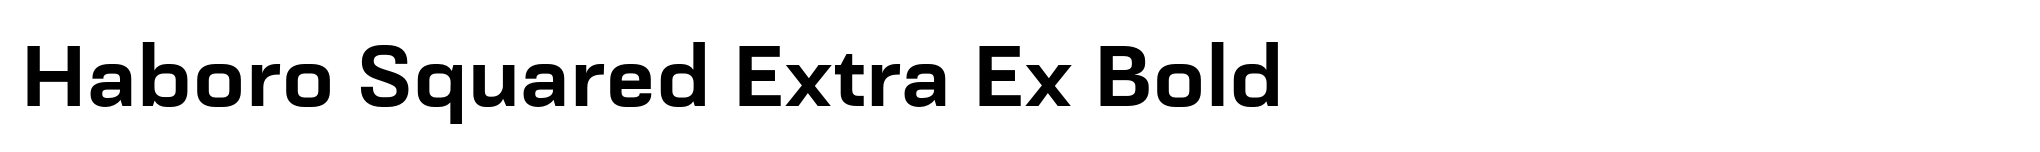 Haboro Squared Extra Ex Bold image